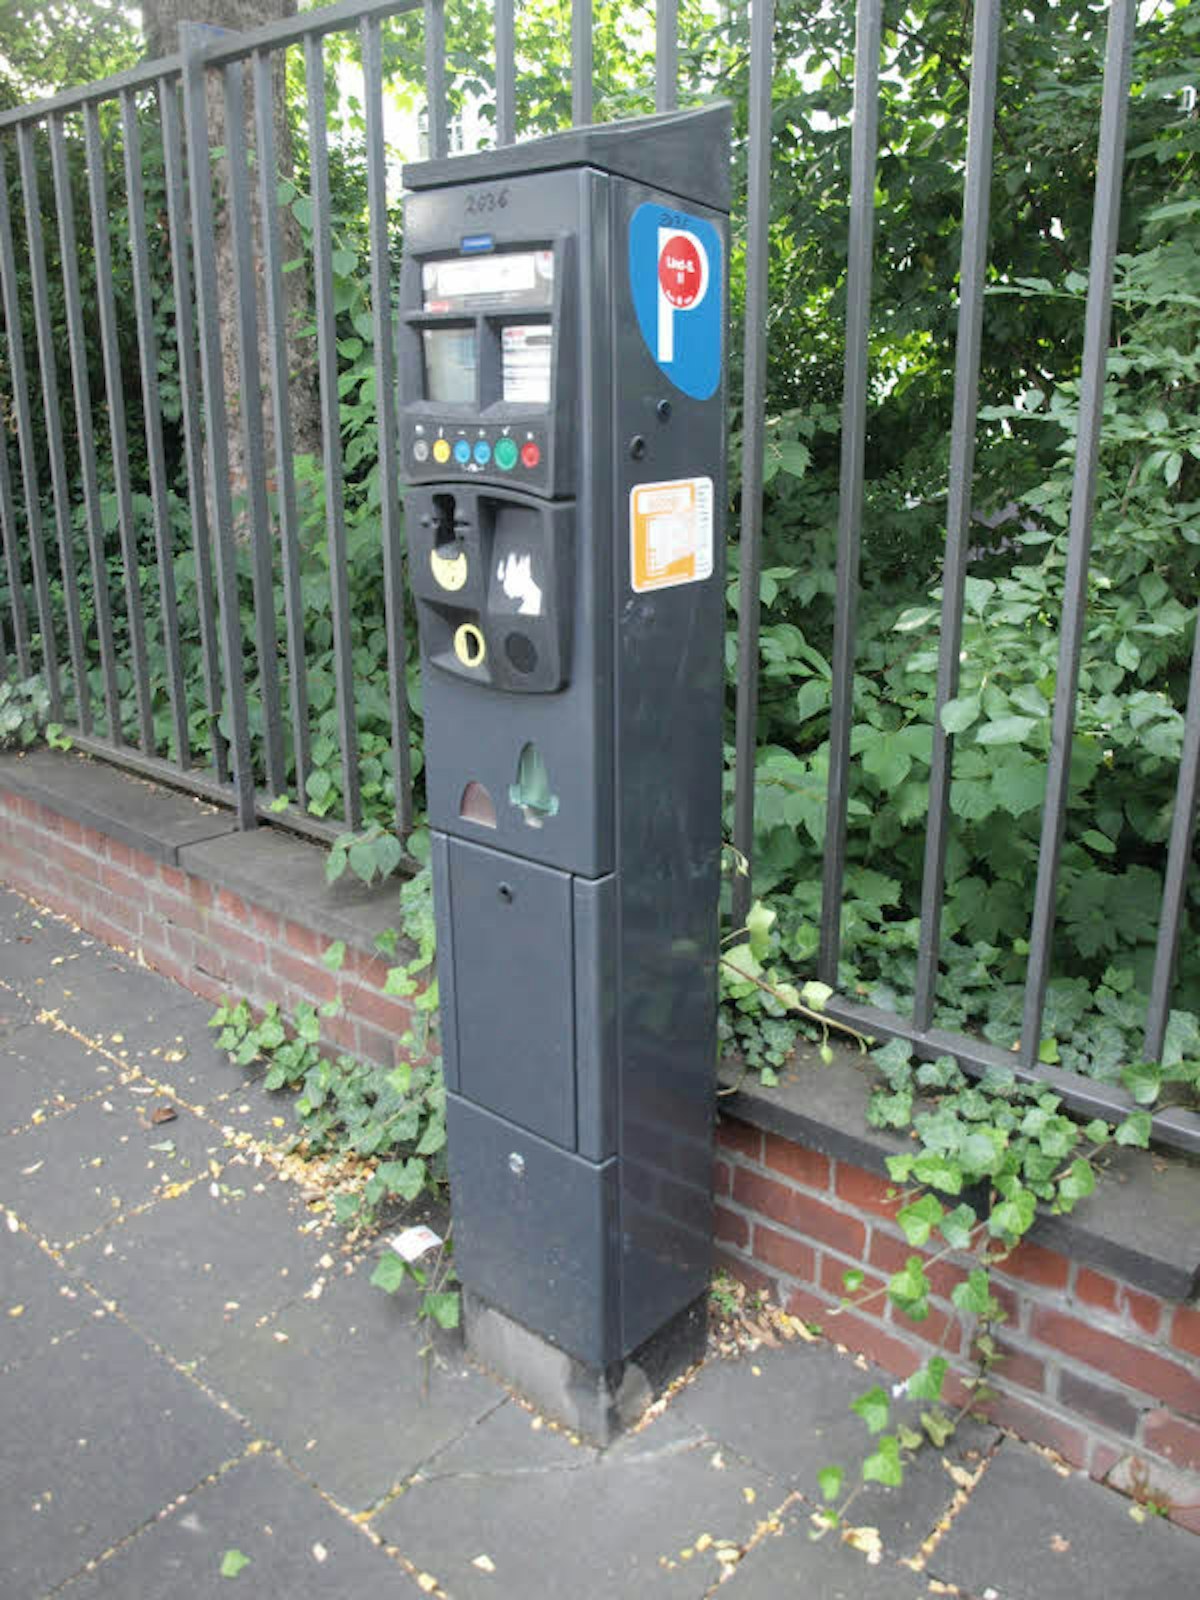  Ein Parkscheinautomat mit dem roten Punkt.